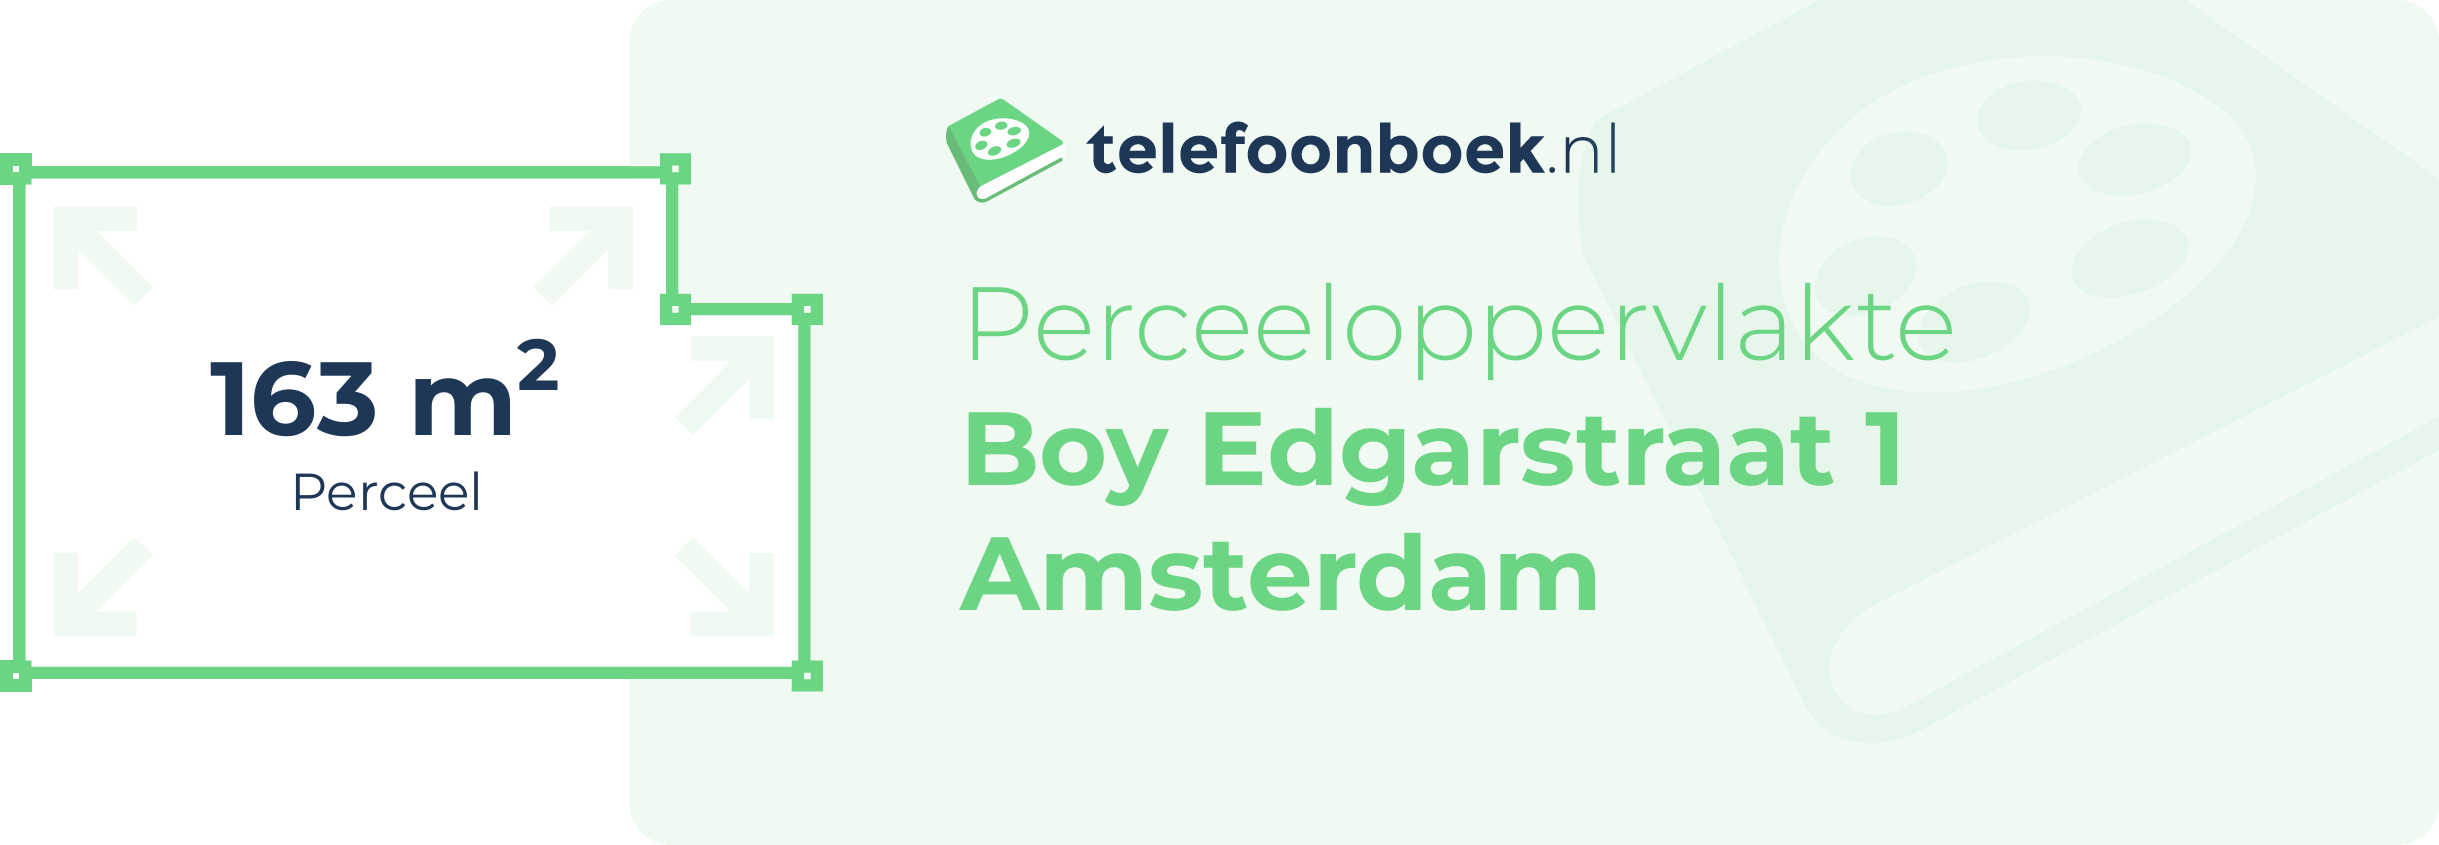 Perceeloppervlakte Boy Edgarstraat 1 Amsterdam